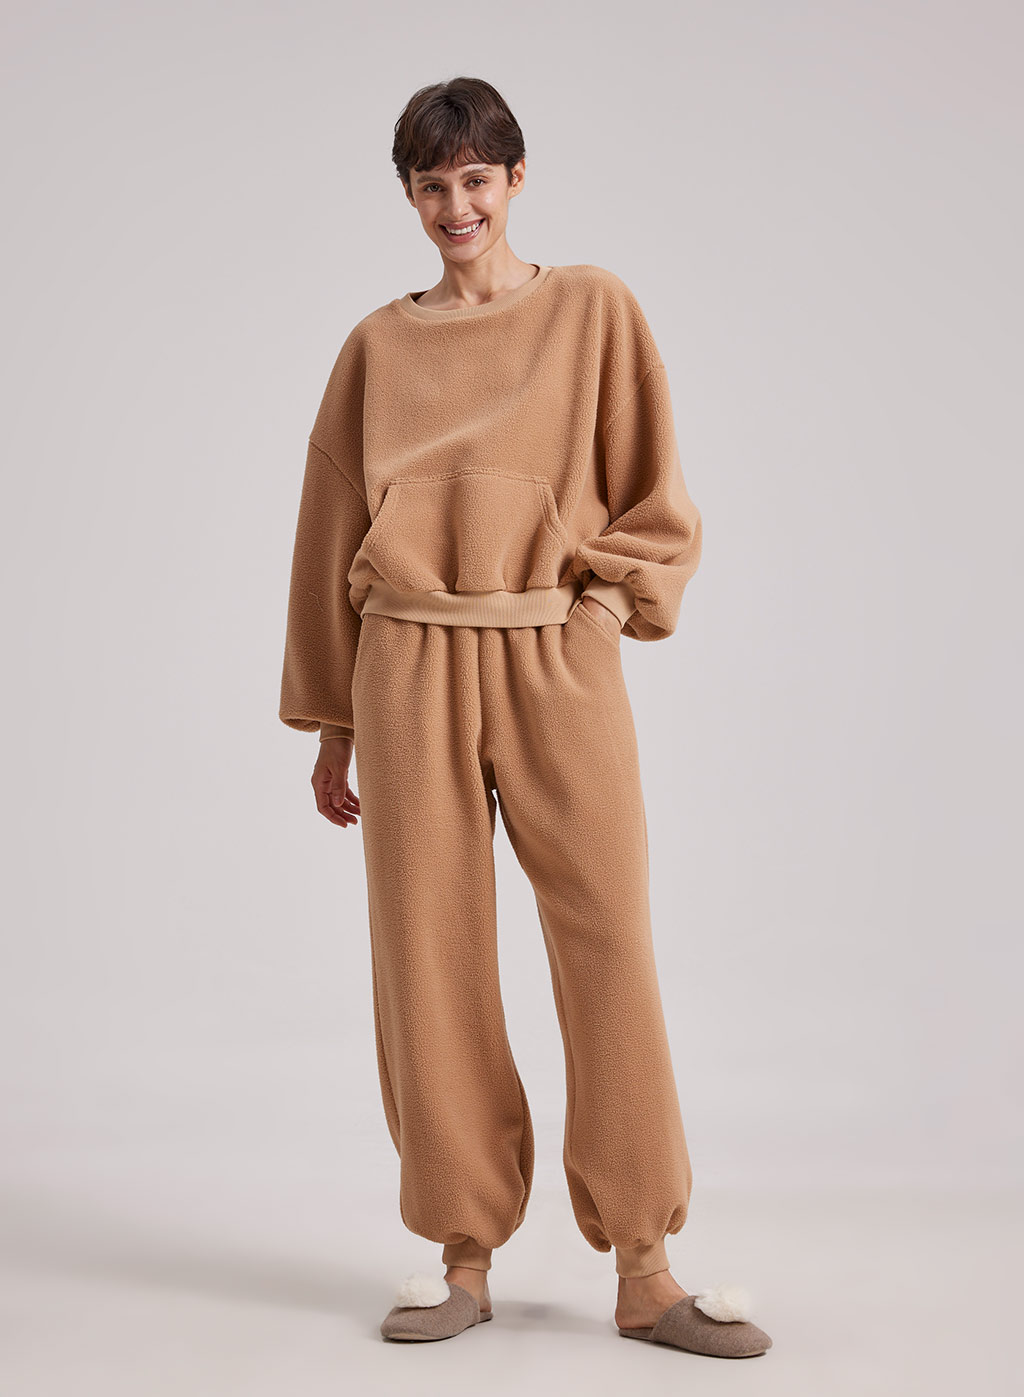 Women Fuzzy Pajama Set, 2 Piece Warm Sweatsuit